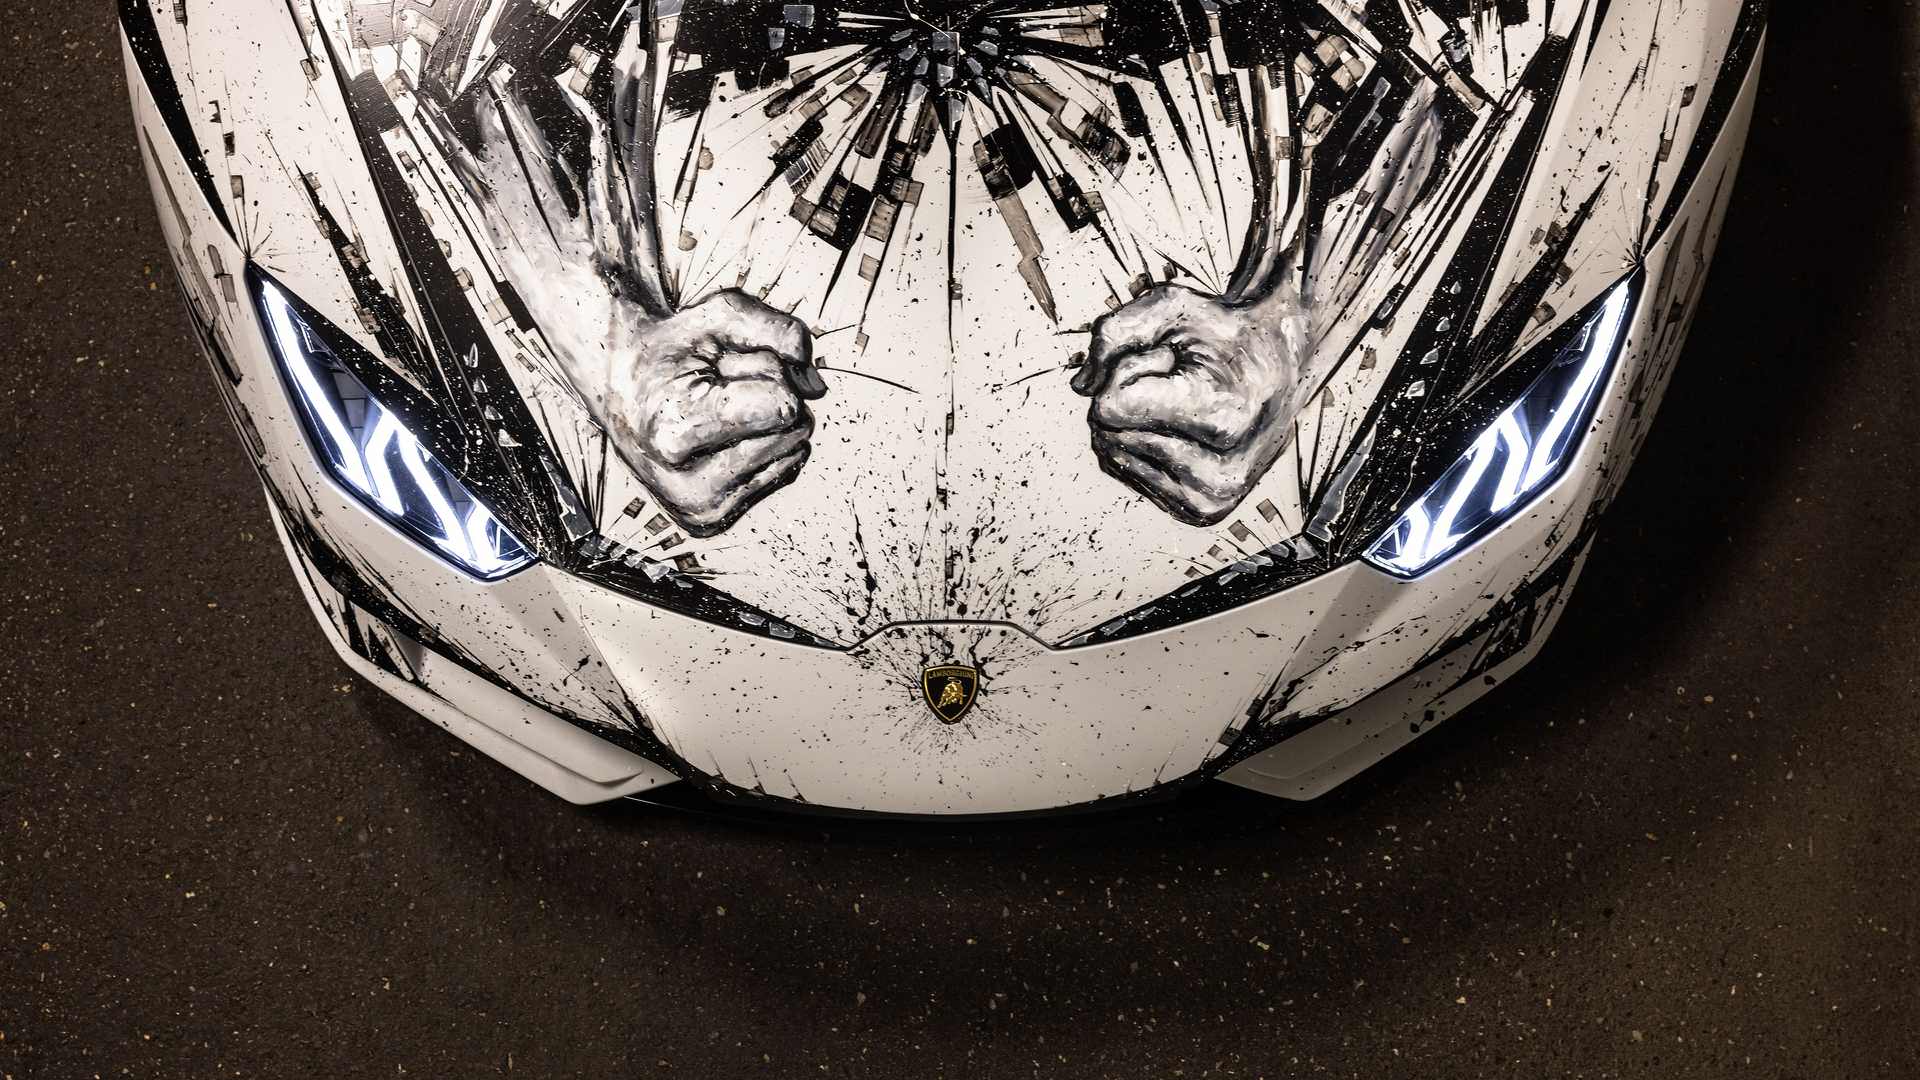 Lamborghini Huracan Evo Gets Stunning Minotaur Mural Makeover